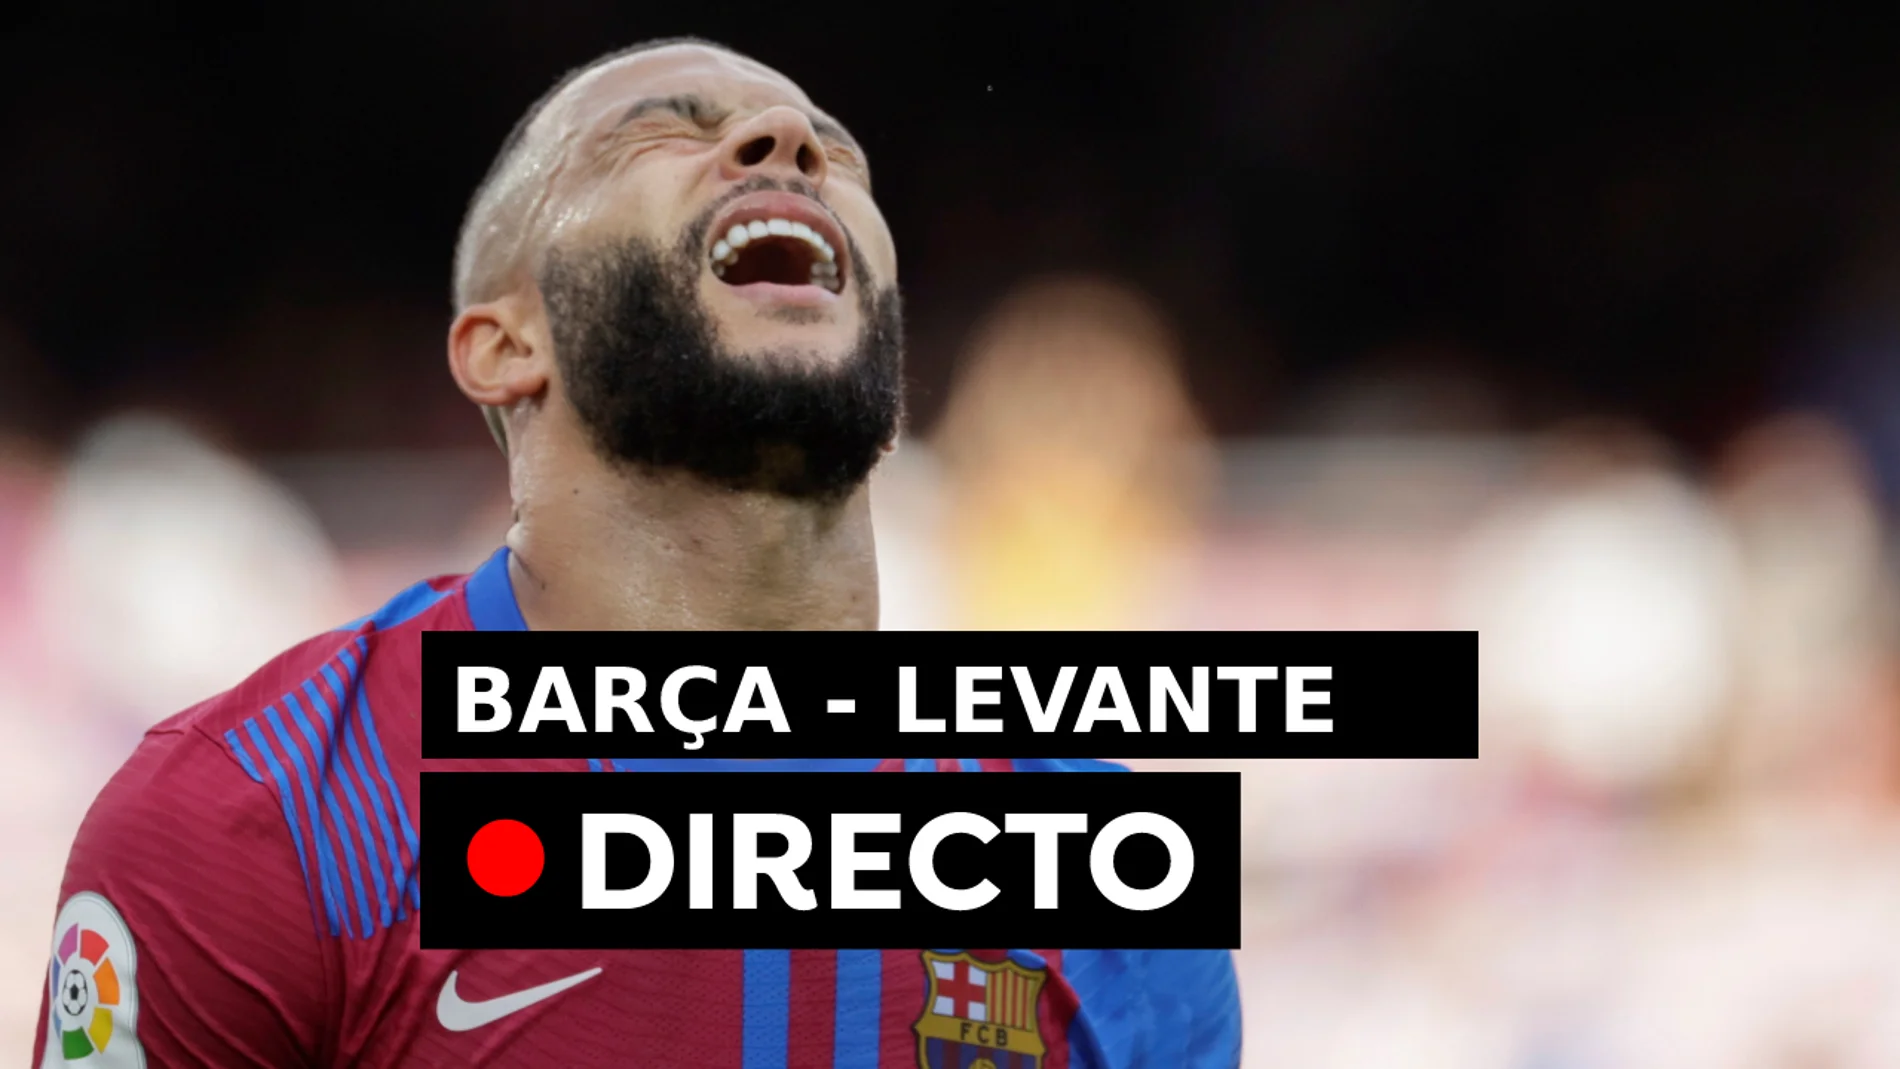 Barcelona - Levante: Resultado del partido de hoy de LaLiga, en directo (2-0)